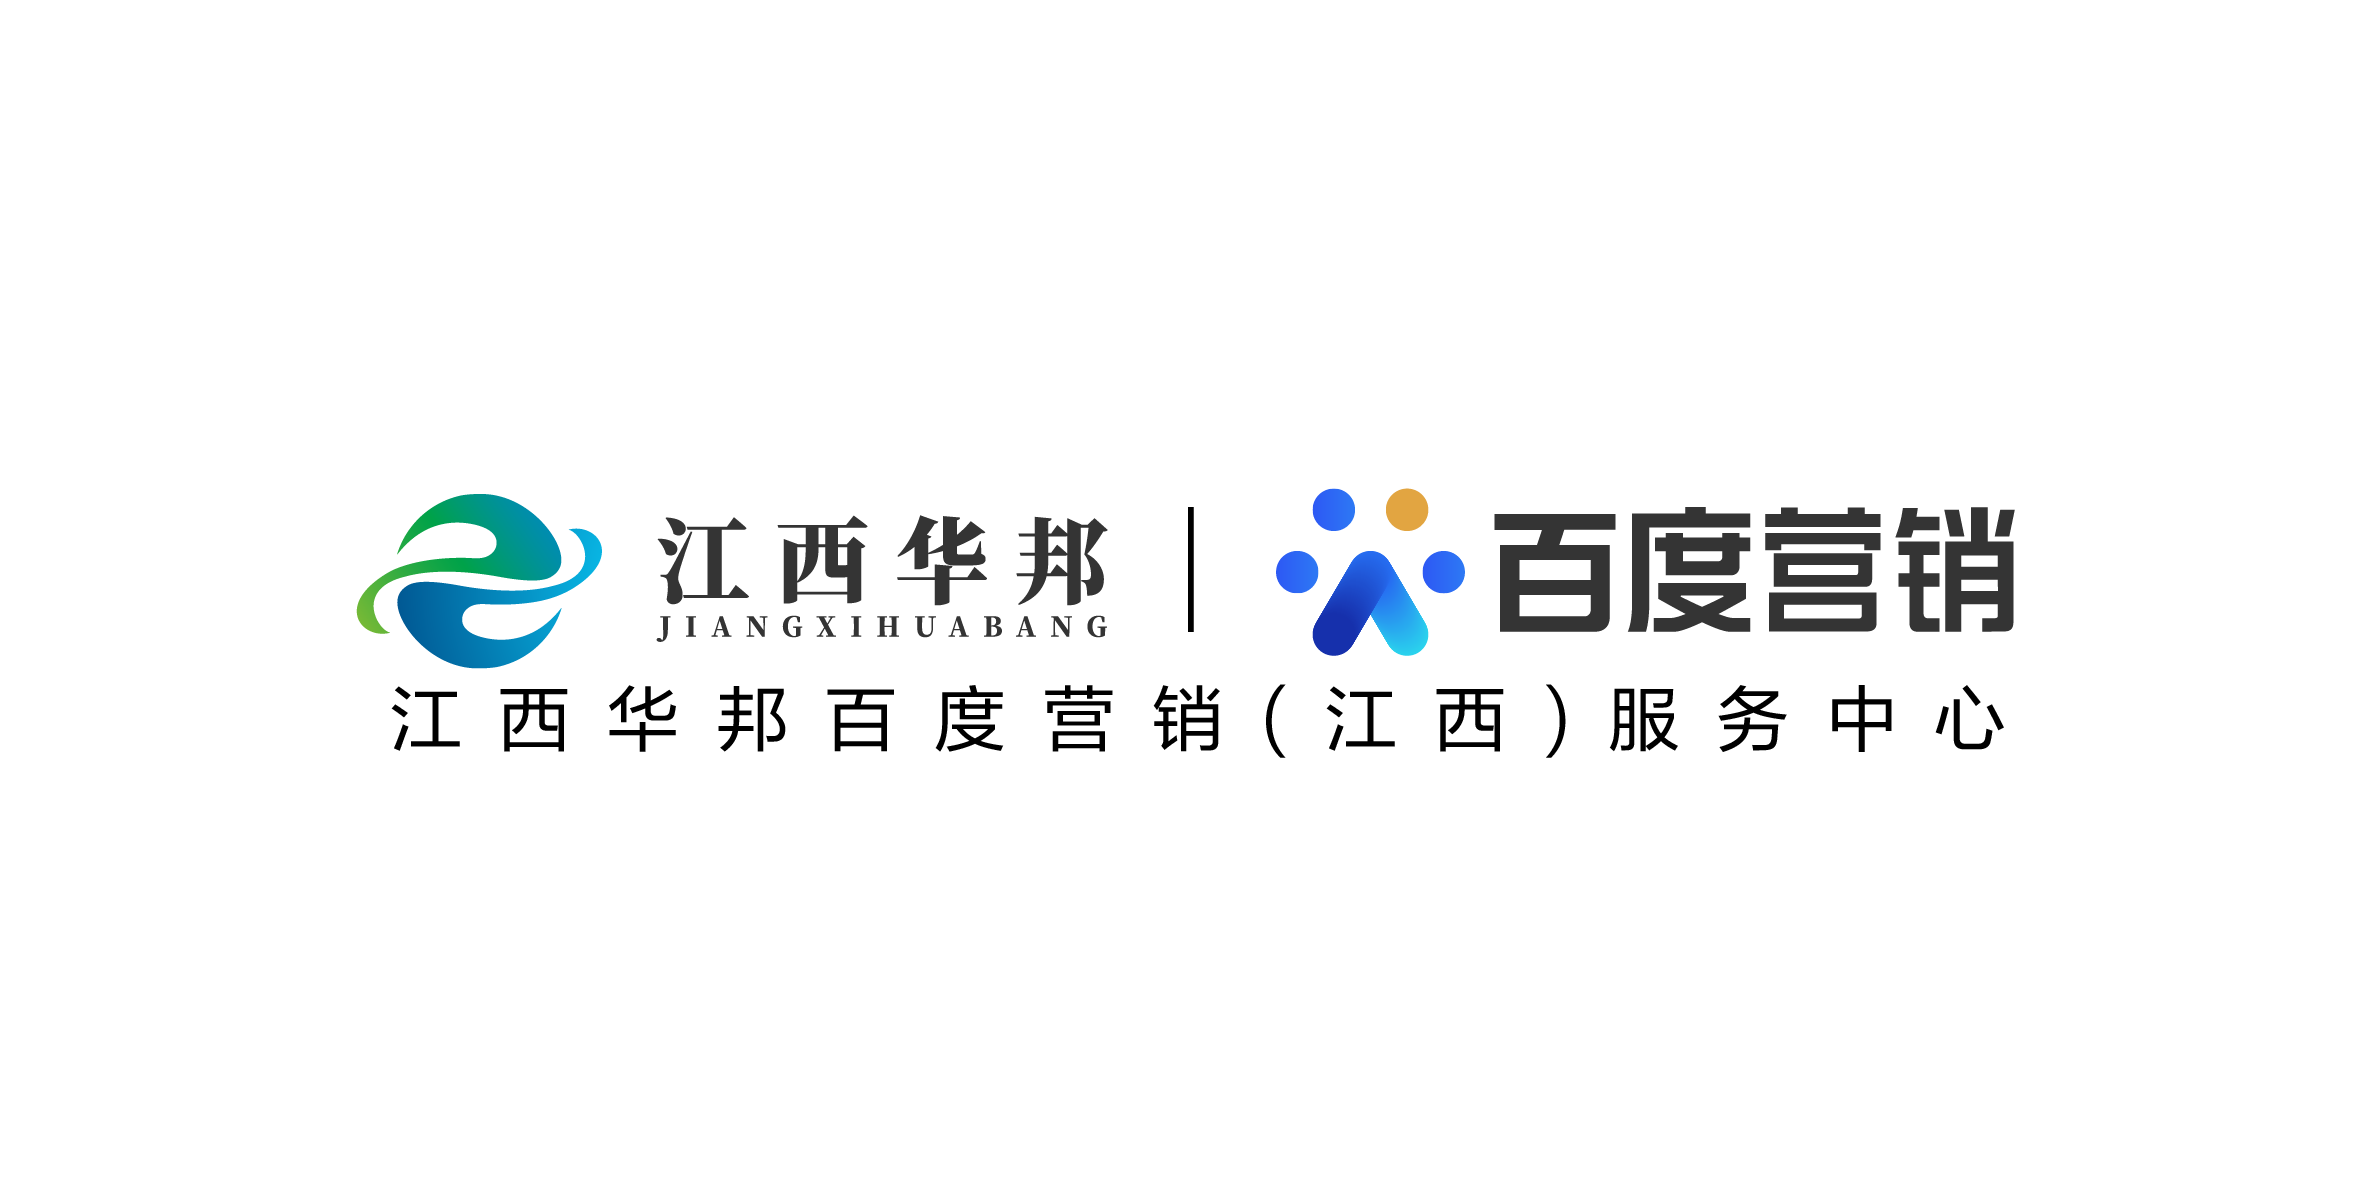 最新logo百度营销-14.png